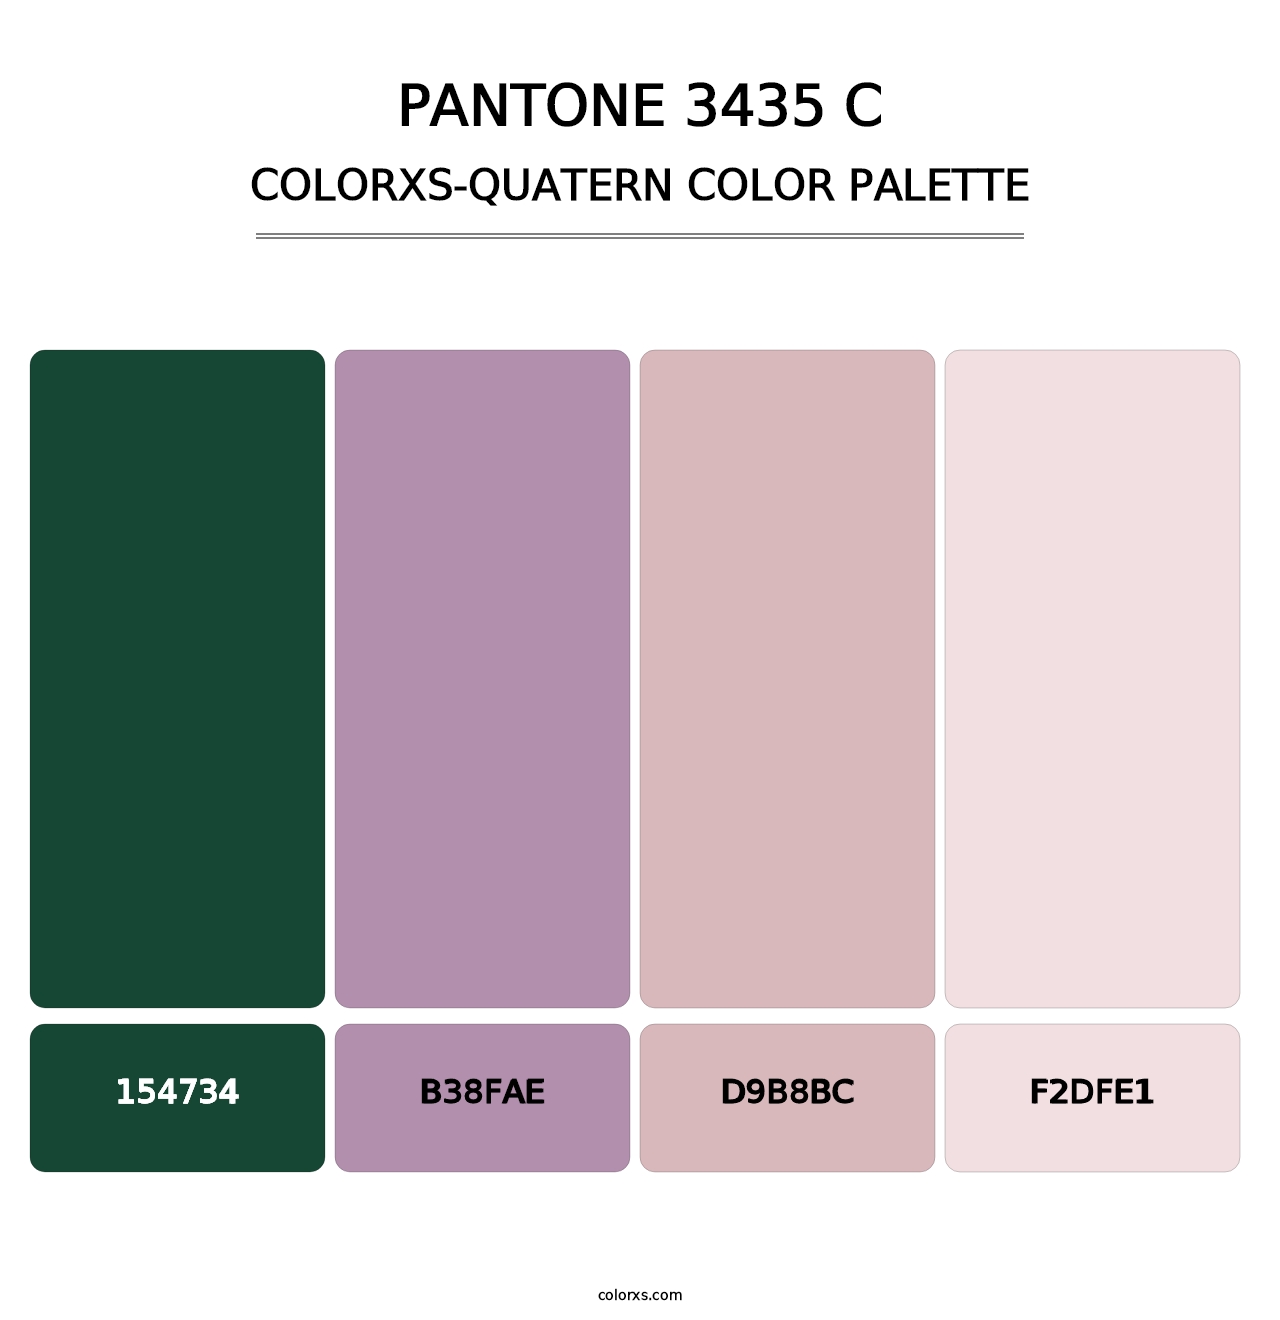 PANTONE 3435 C - Colorxs Quatern Palette